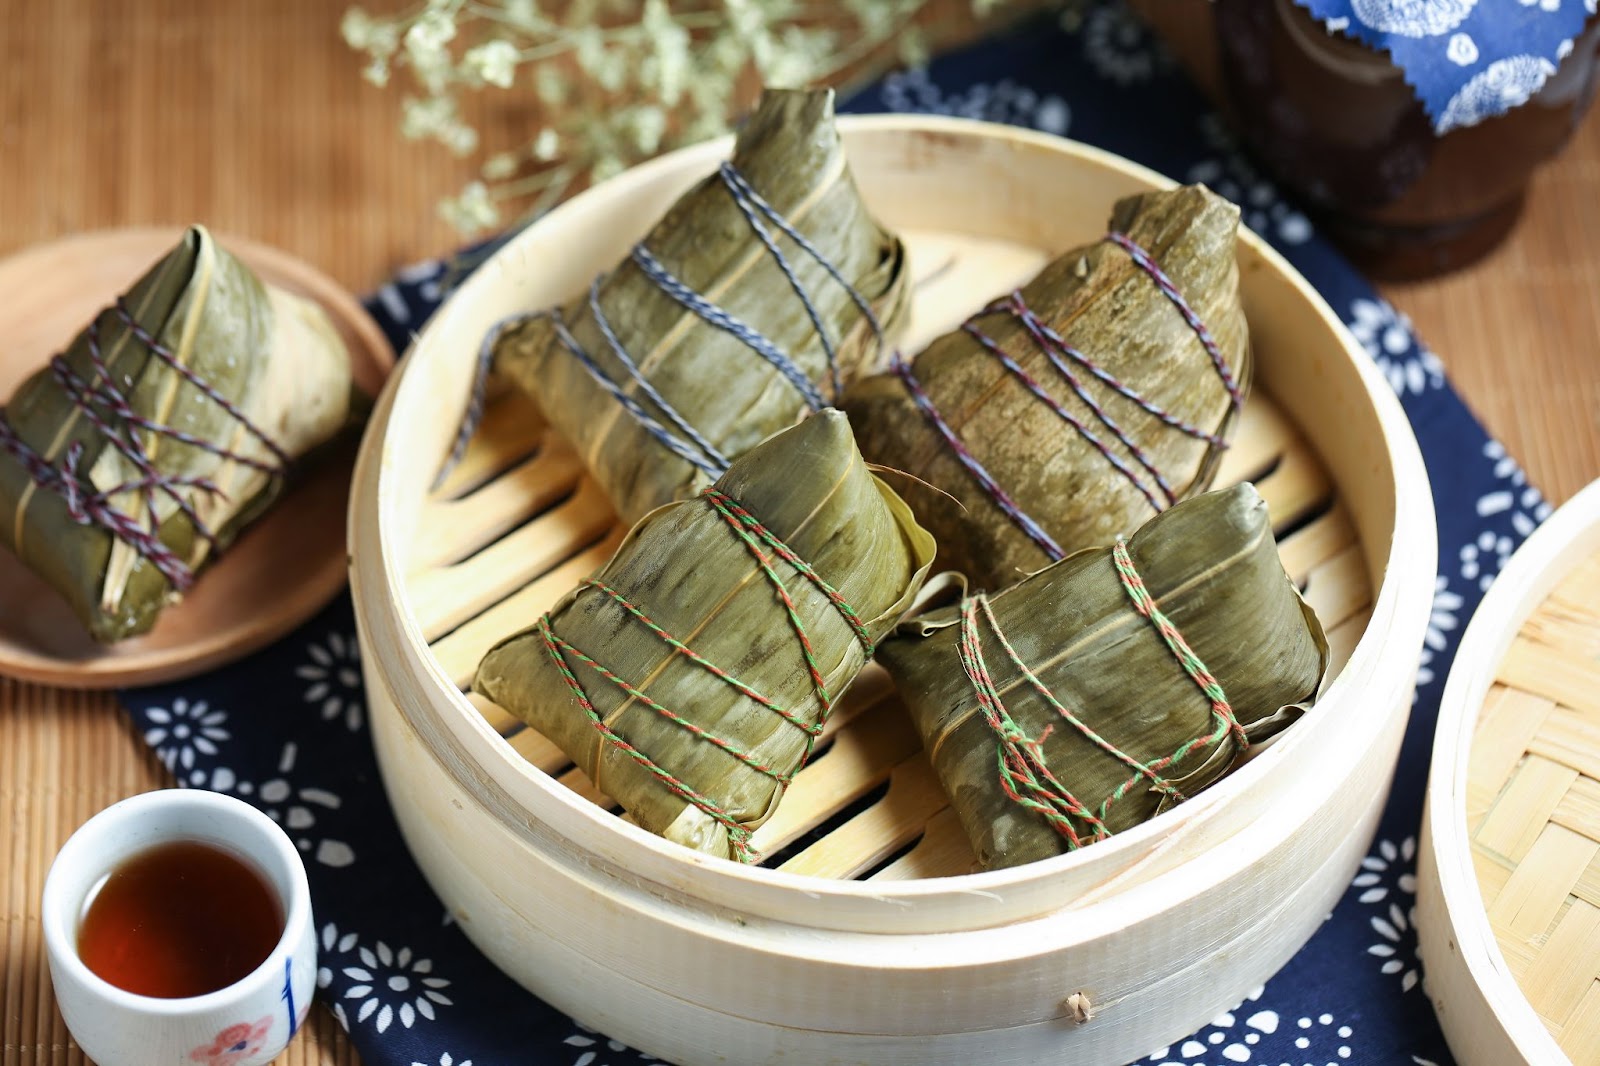 Sebuah mangkuk nasi dan makanan dalam keranjang bambu. Makanan terlihat lezat dan menggugah selera.